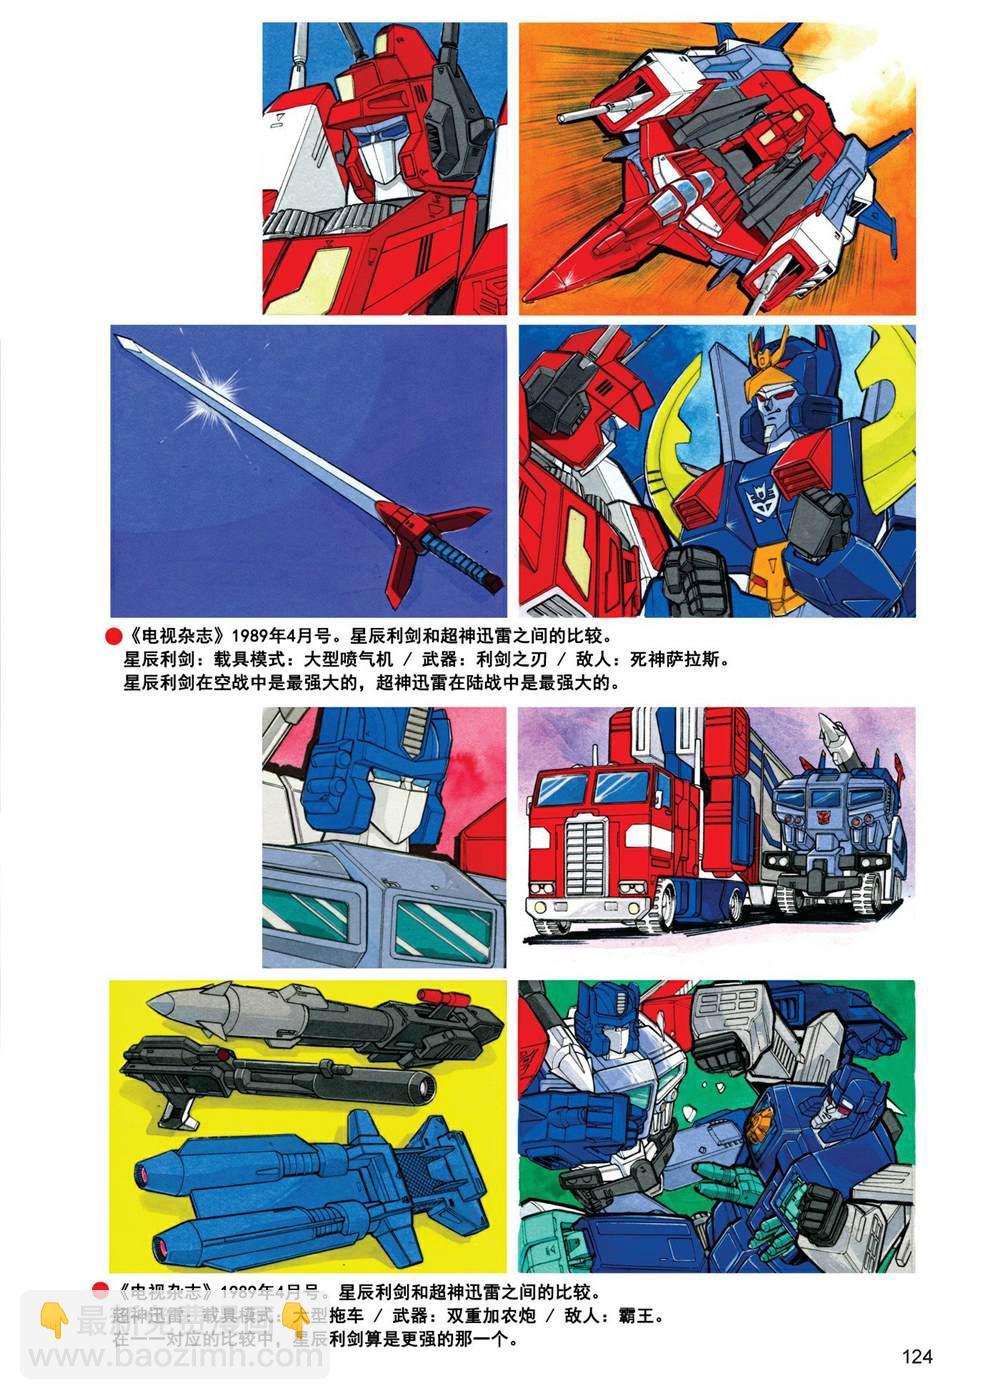 变形金刚日版G1杂志插画 - 战斗吧！超机械生命体变形金刚：胜利之斗争 - 2